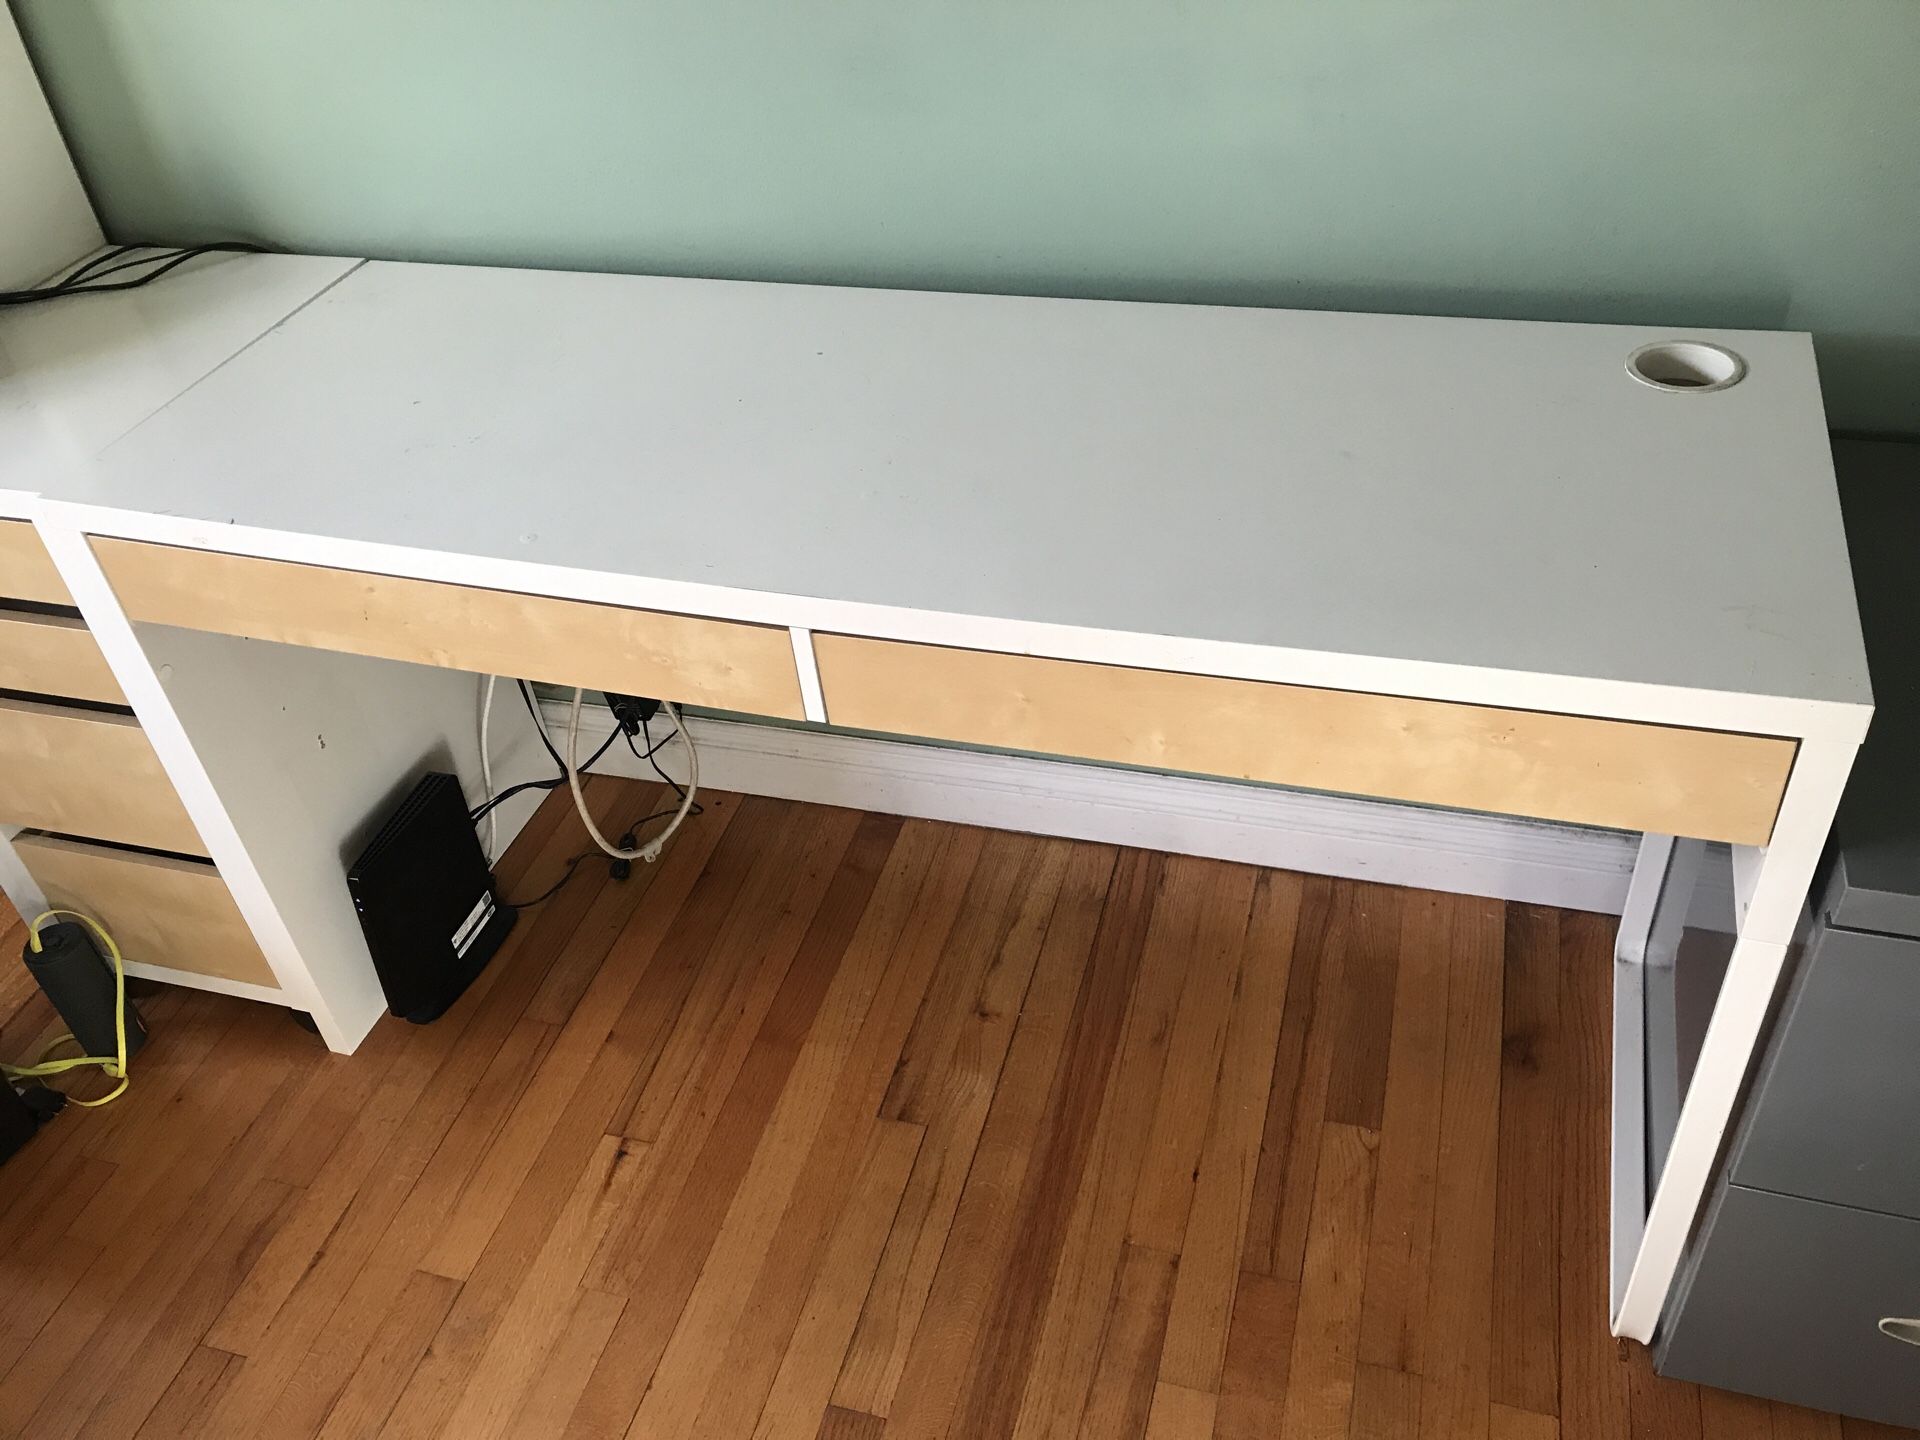 IKEA desk long w/ 2 drawers